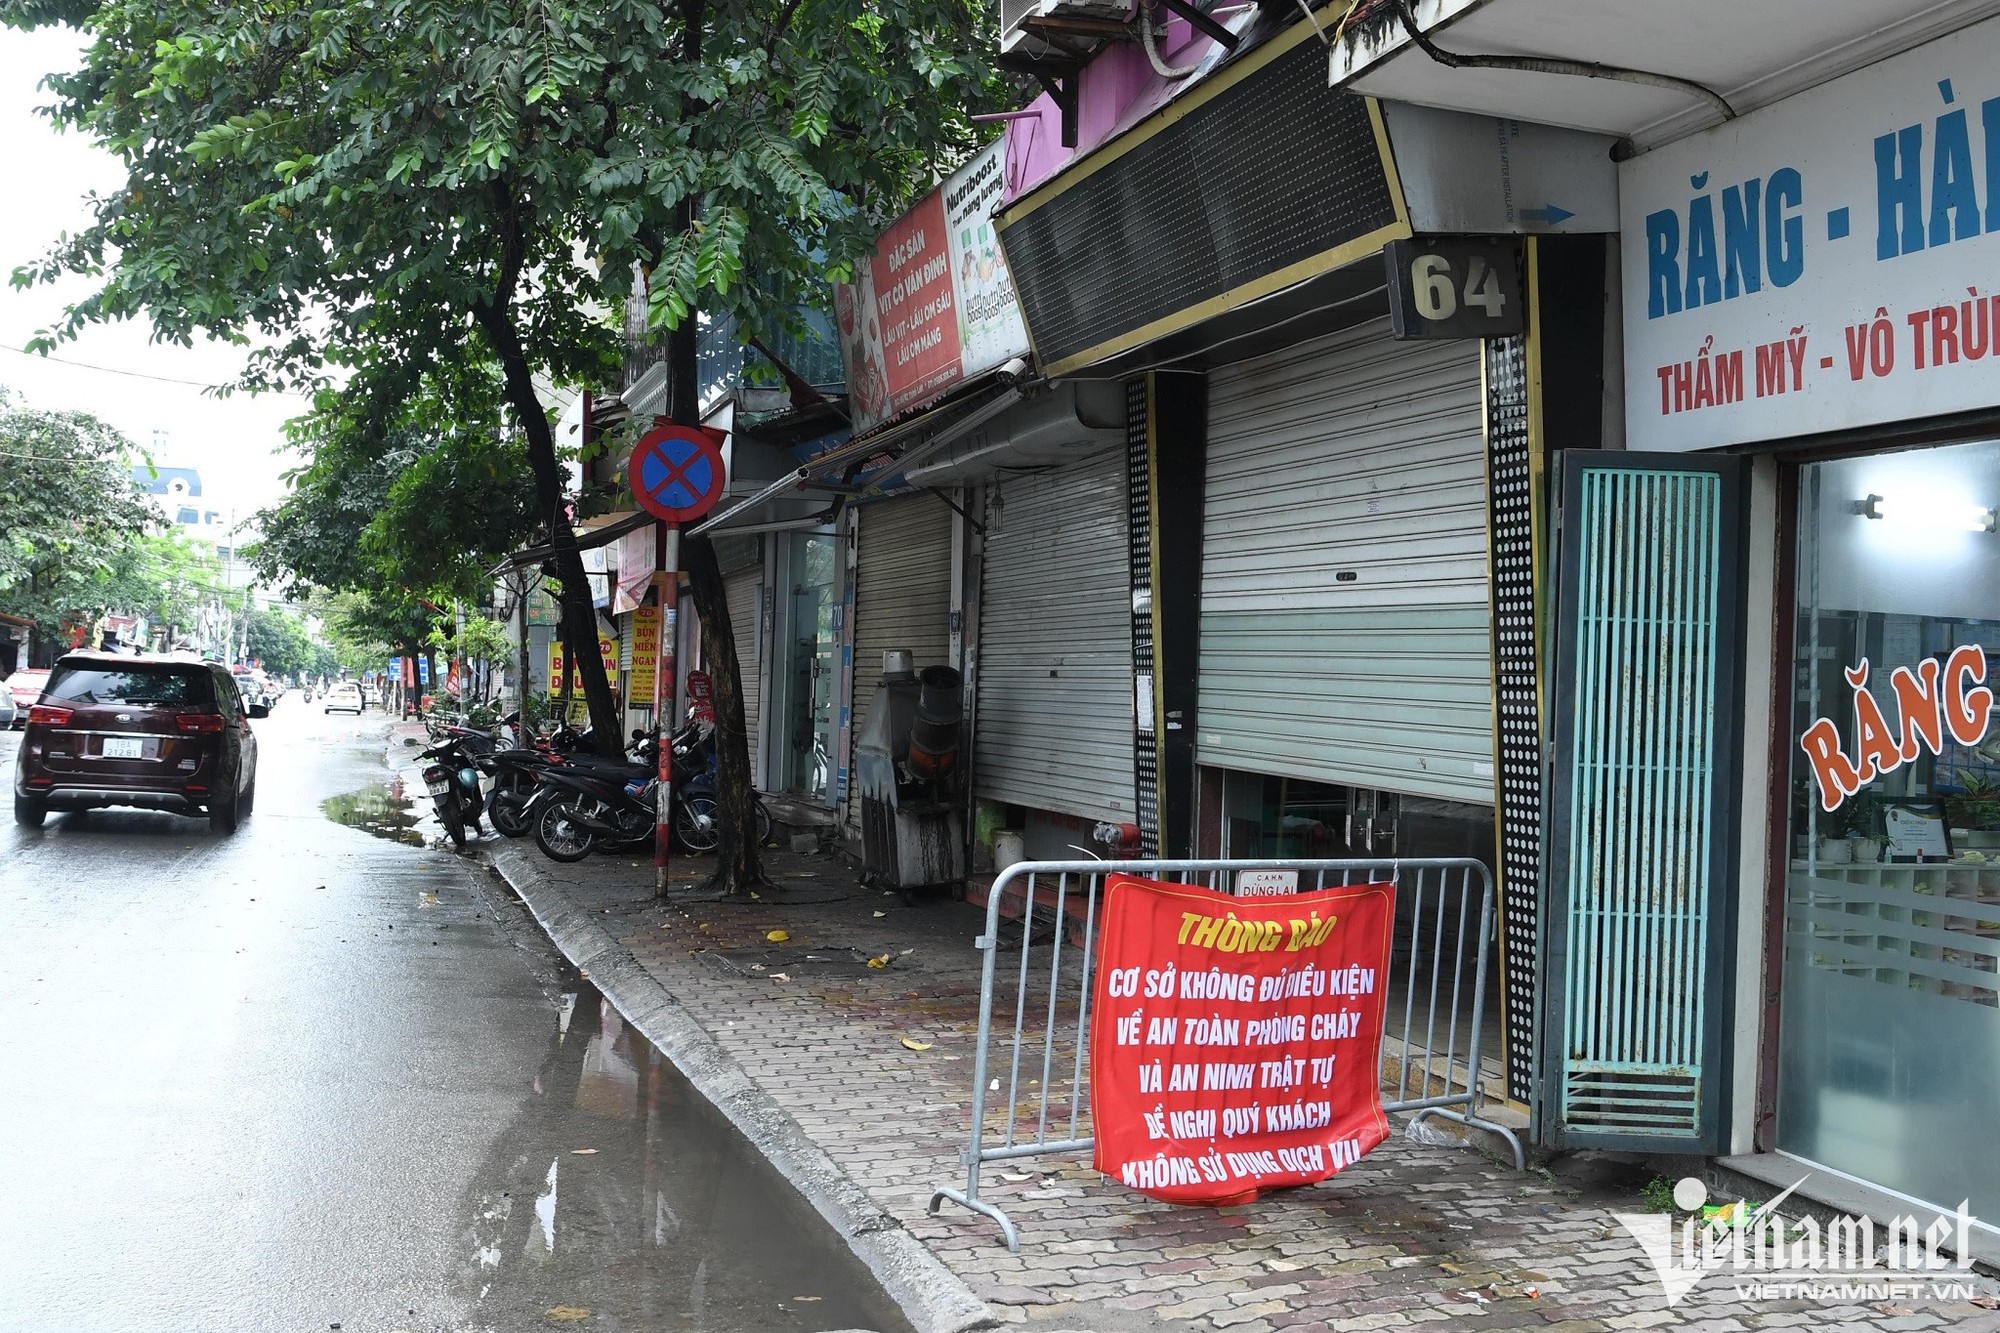 Karaoke vi phạm phòng cháy ở Hà Nội bị rào chắn để ngăn hoạt động chui - Ảnh 3.